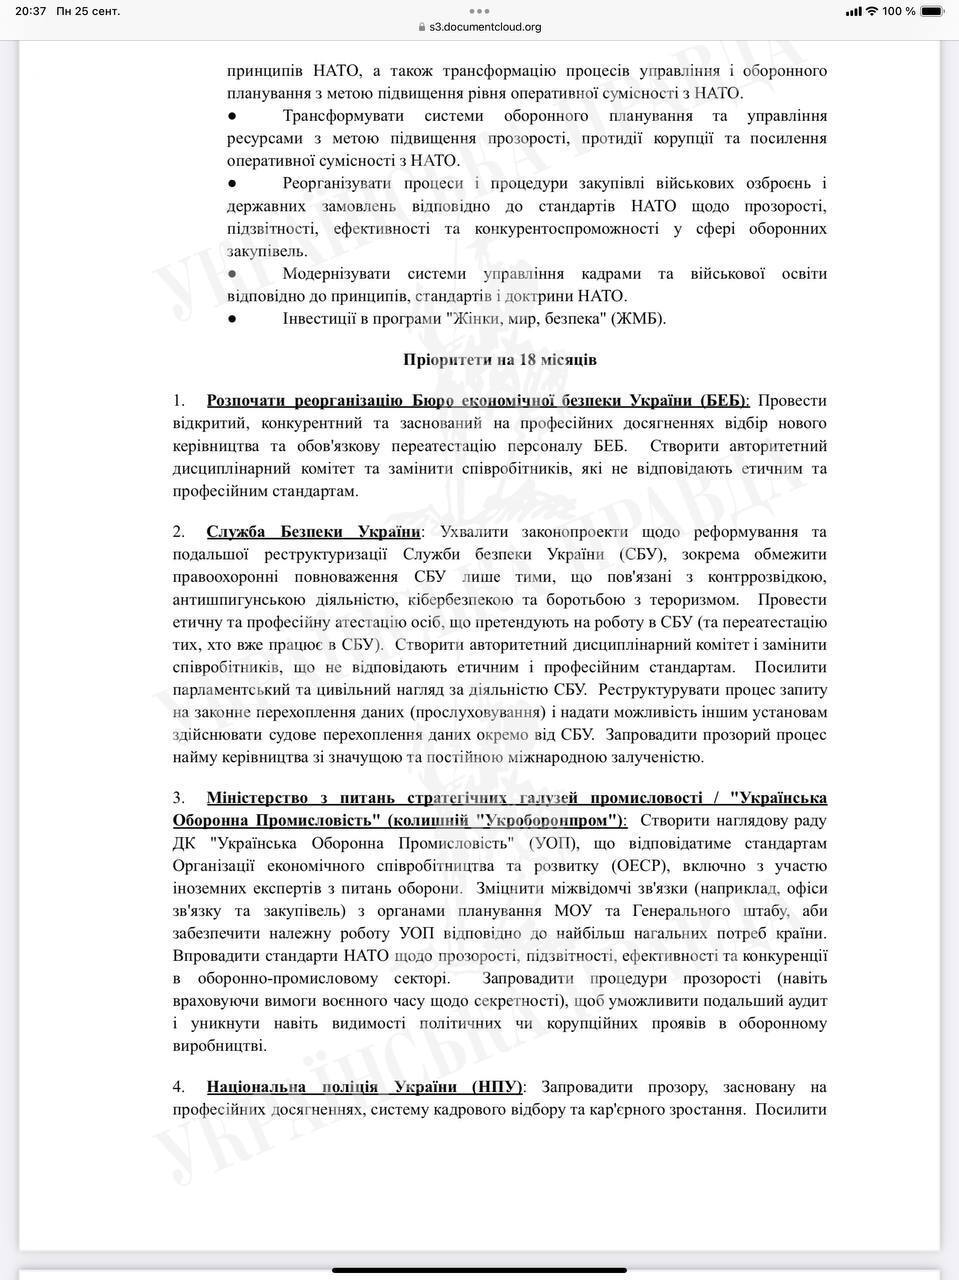 "Основа для консультацій": у США прокоментували лист із переліком реформ, які потрібно провести Україні